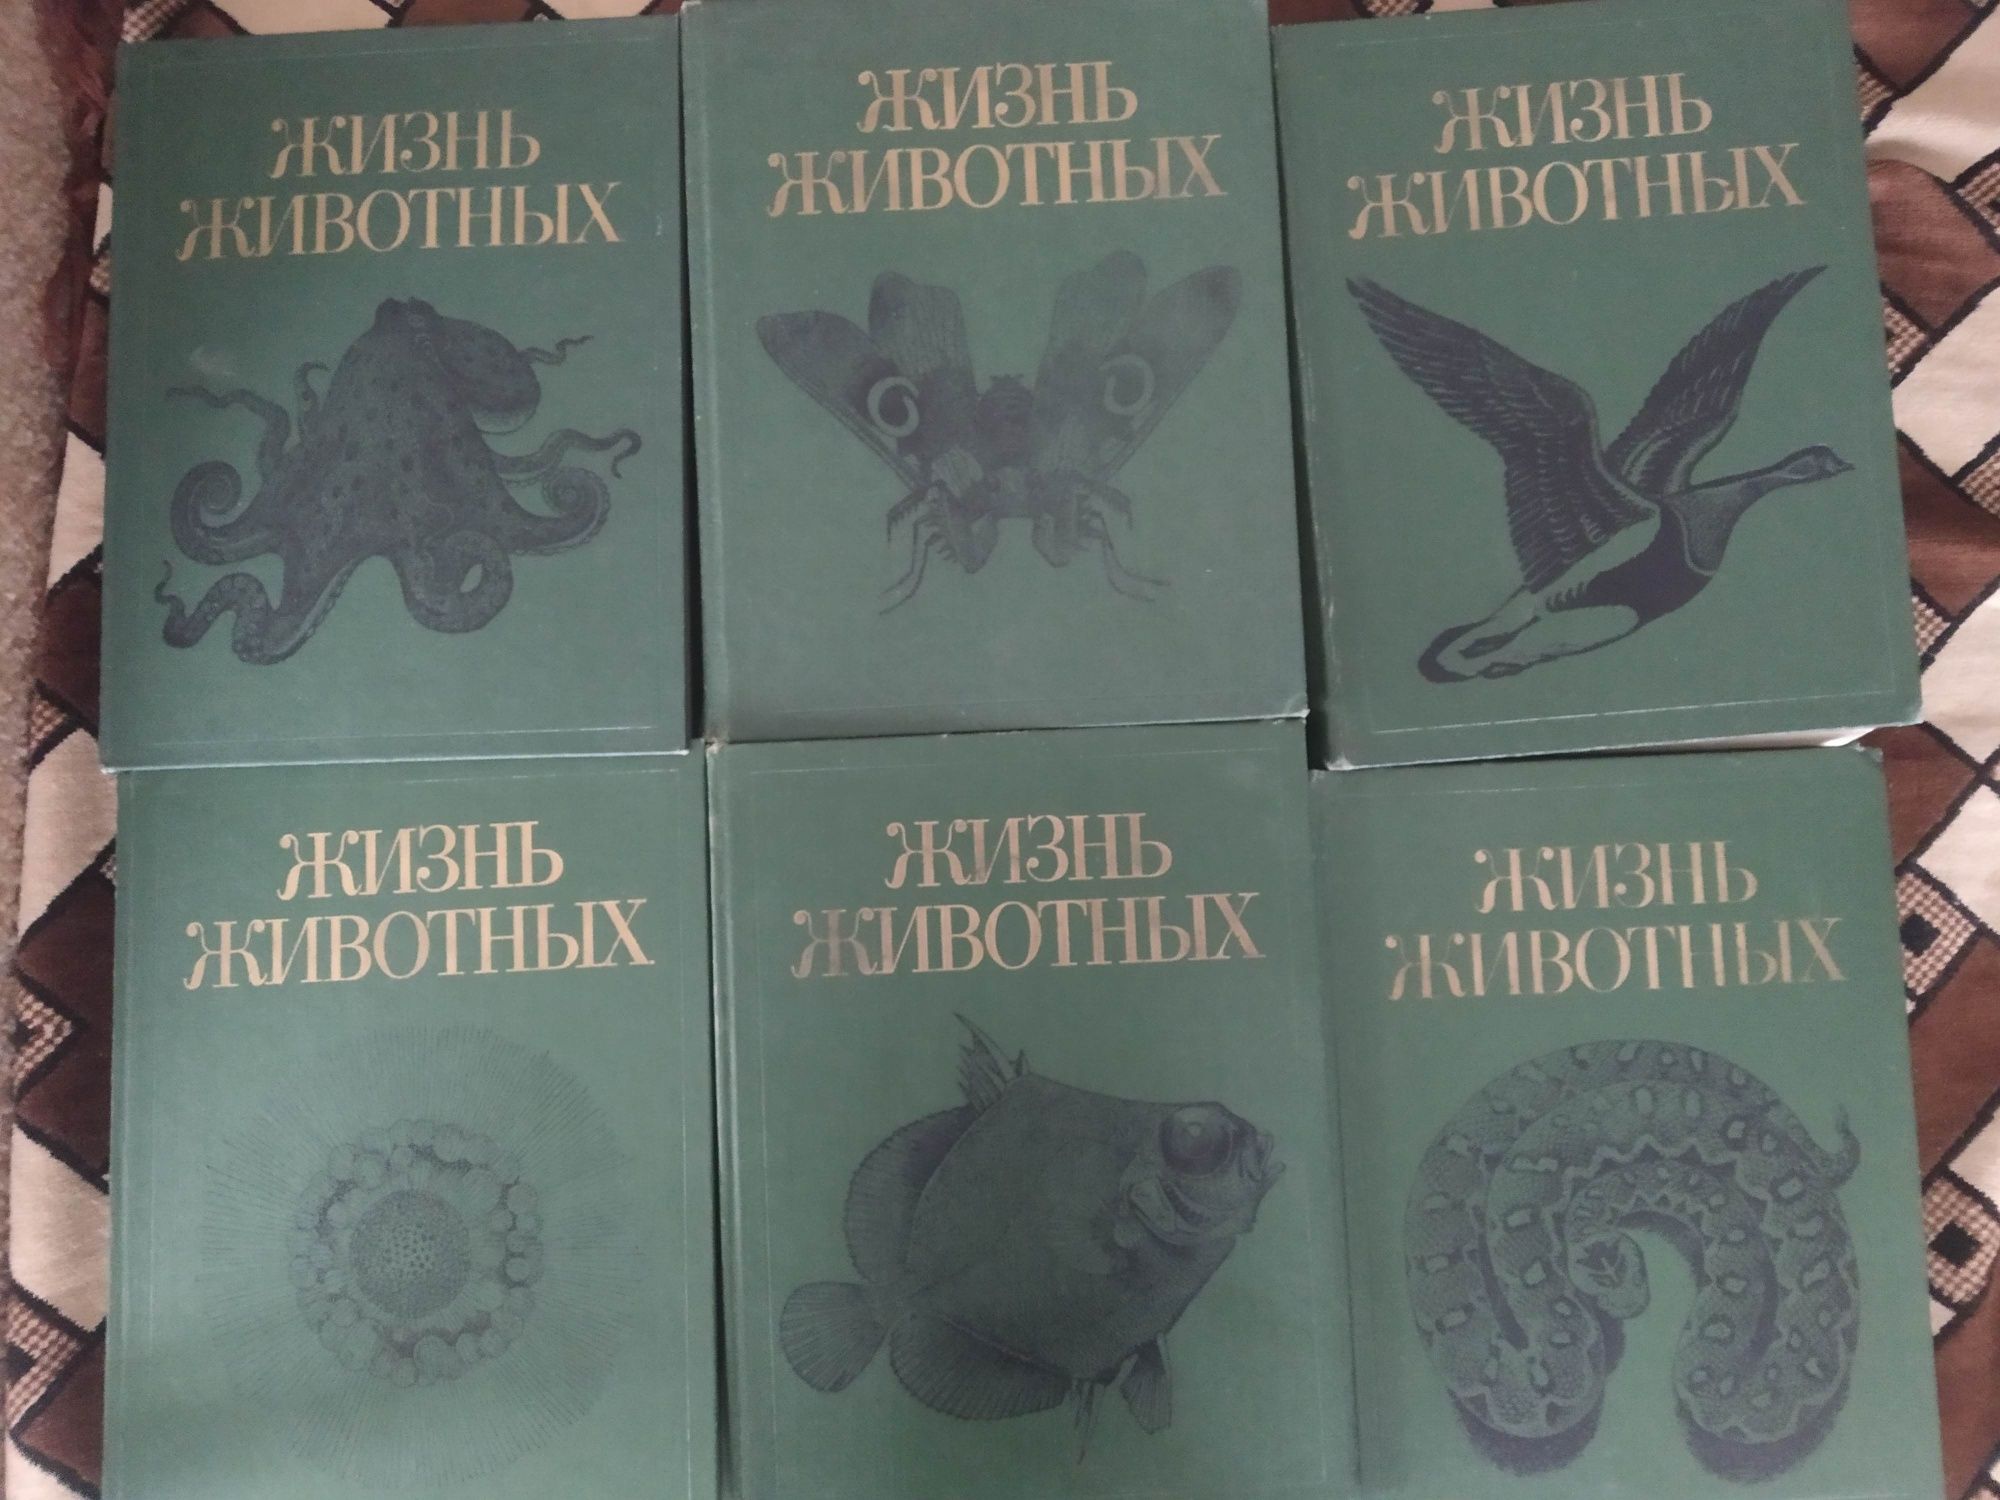 Жизнь животных в 7ми томах

Состояние: Отличное
Год: 1987
Тираж: 300 т